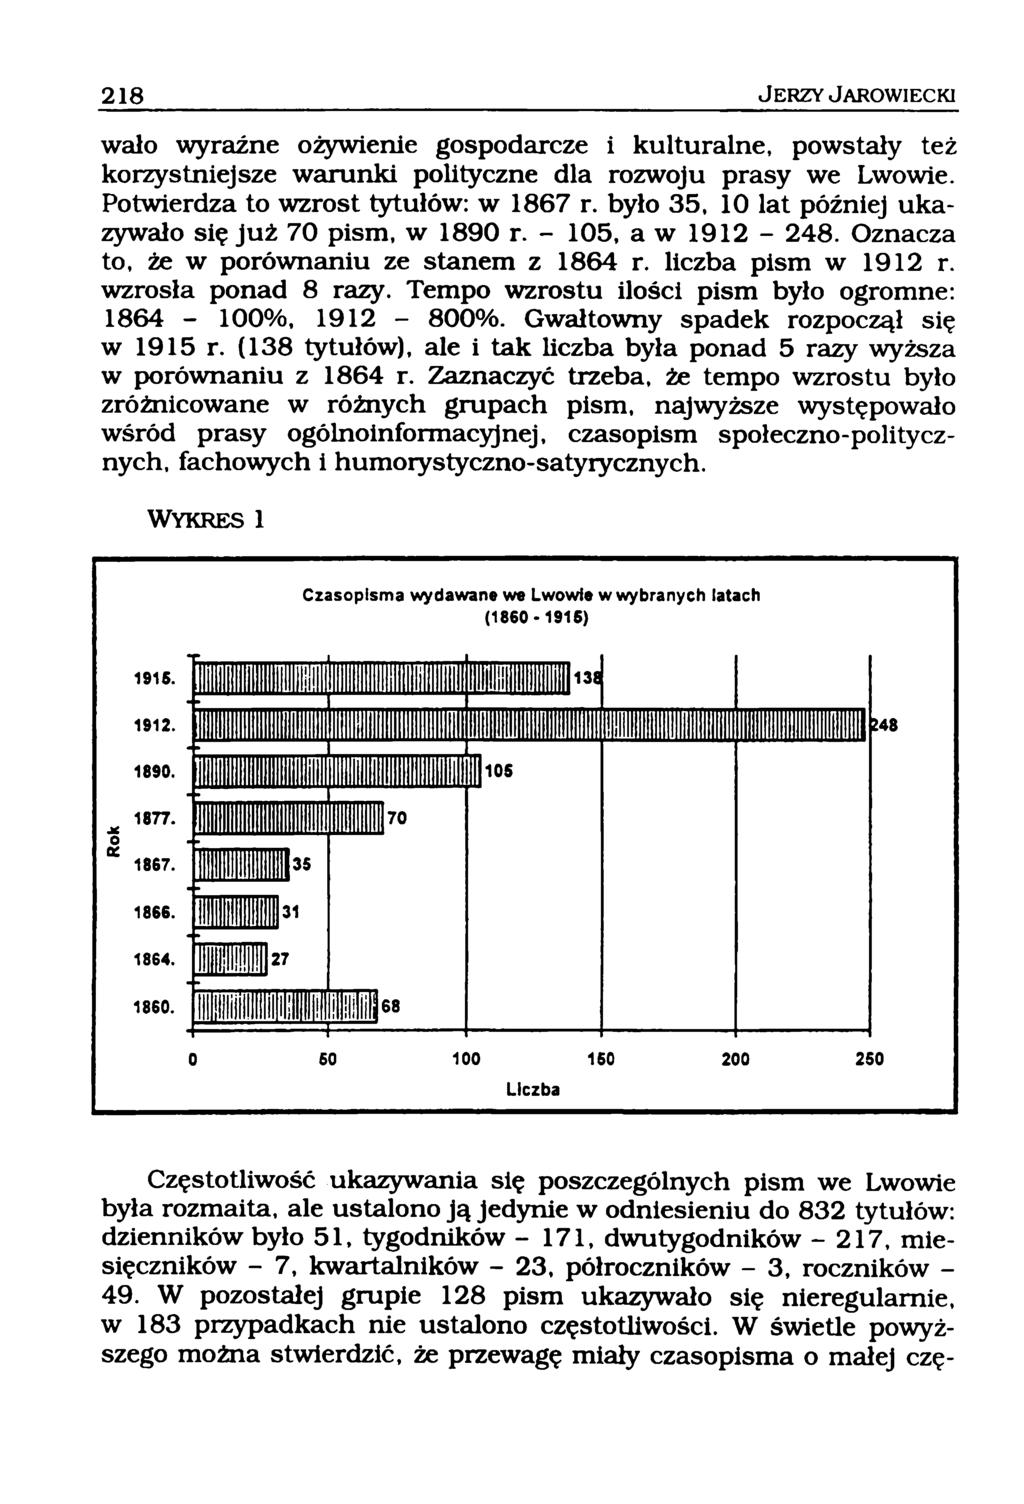 wało wyraźne ożywienie gospodarcze i kulturalne, powstały też korzystniejsze warunki polityczne dla rozwoju prasy we Lwowie. Potwierdza to wzrost tytułów: w 1867 r.